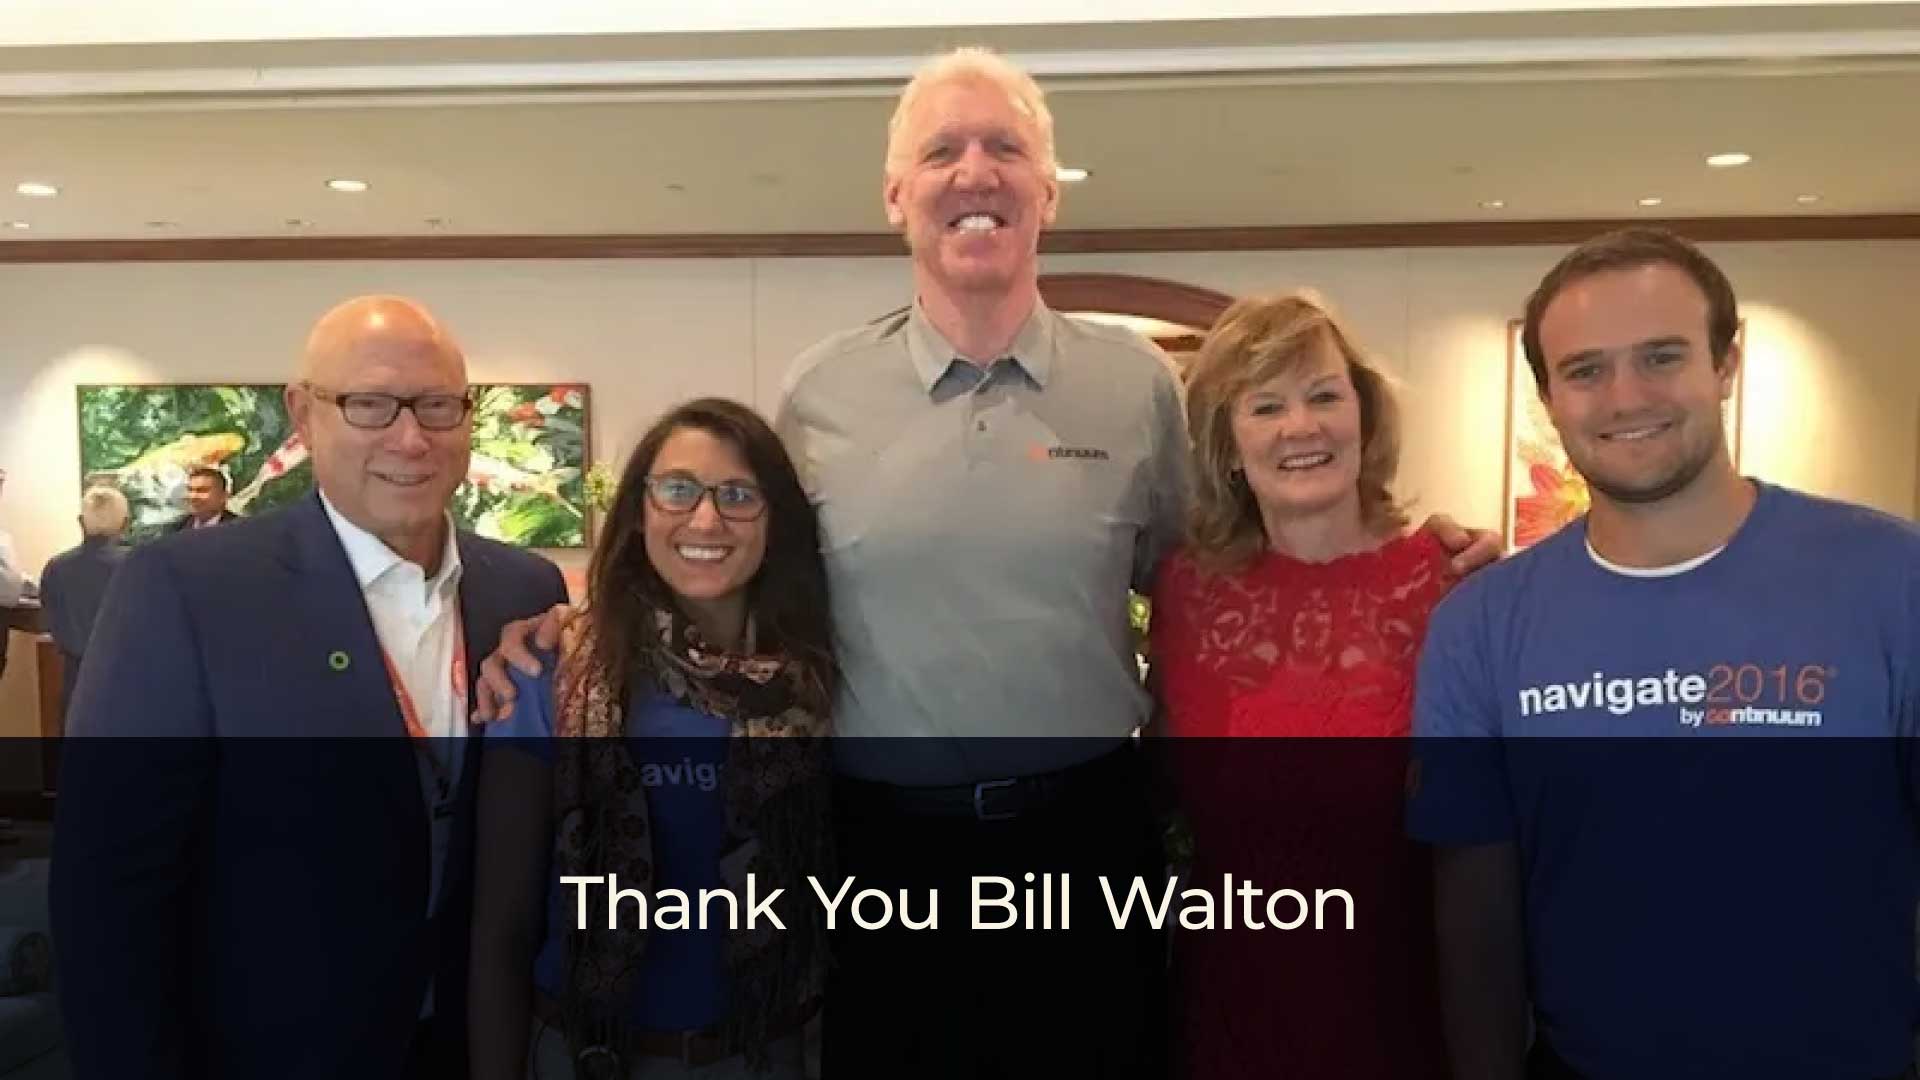 Thank You Bill Walton – The Sponsorship Guy